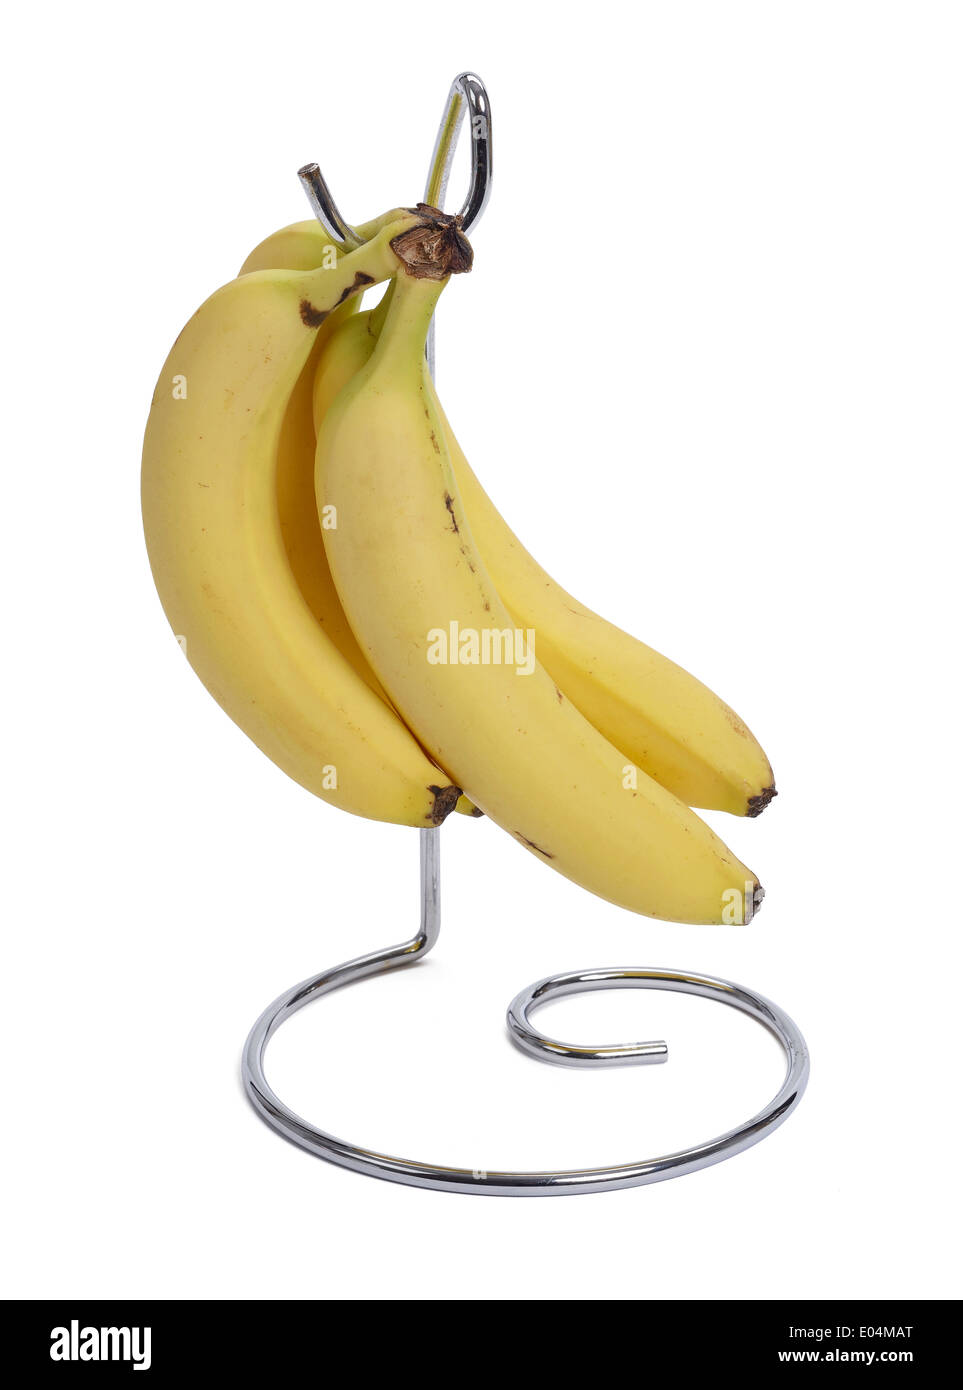 Banana hook with bananas Stock Photo